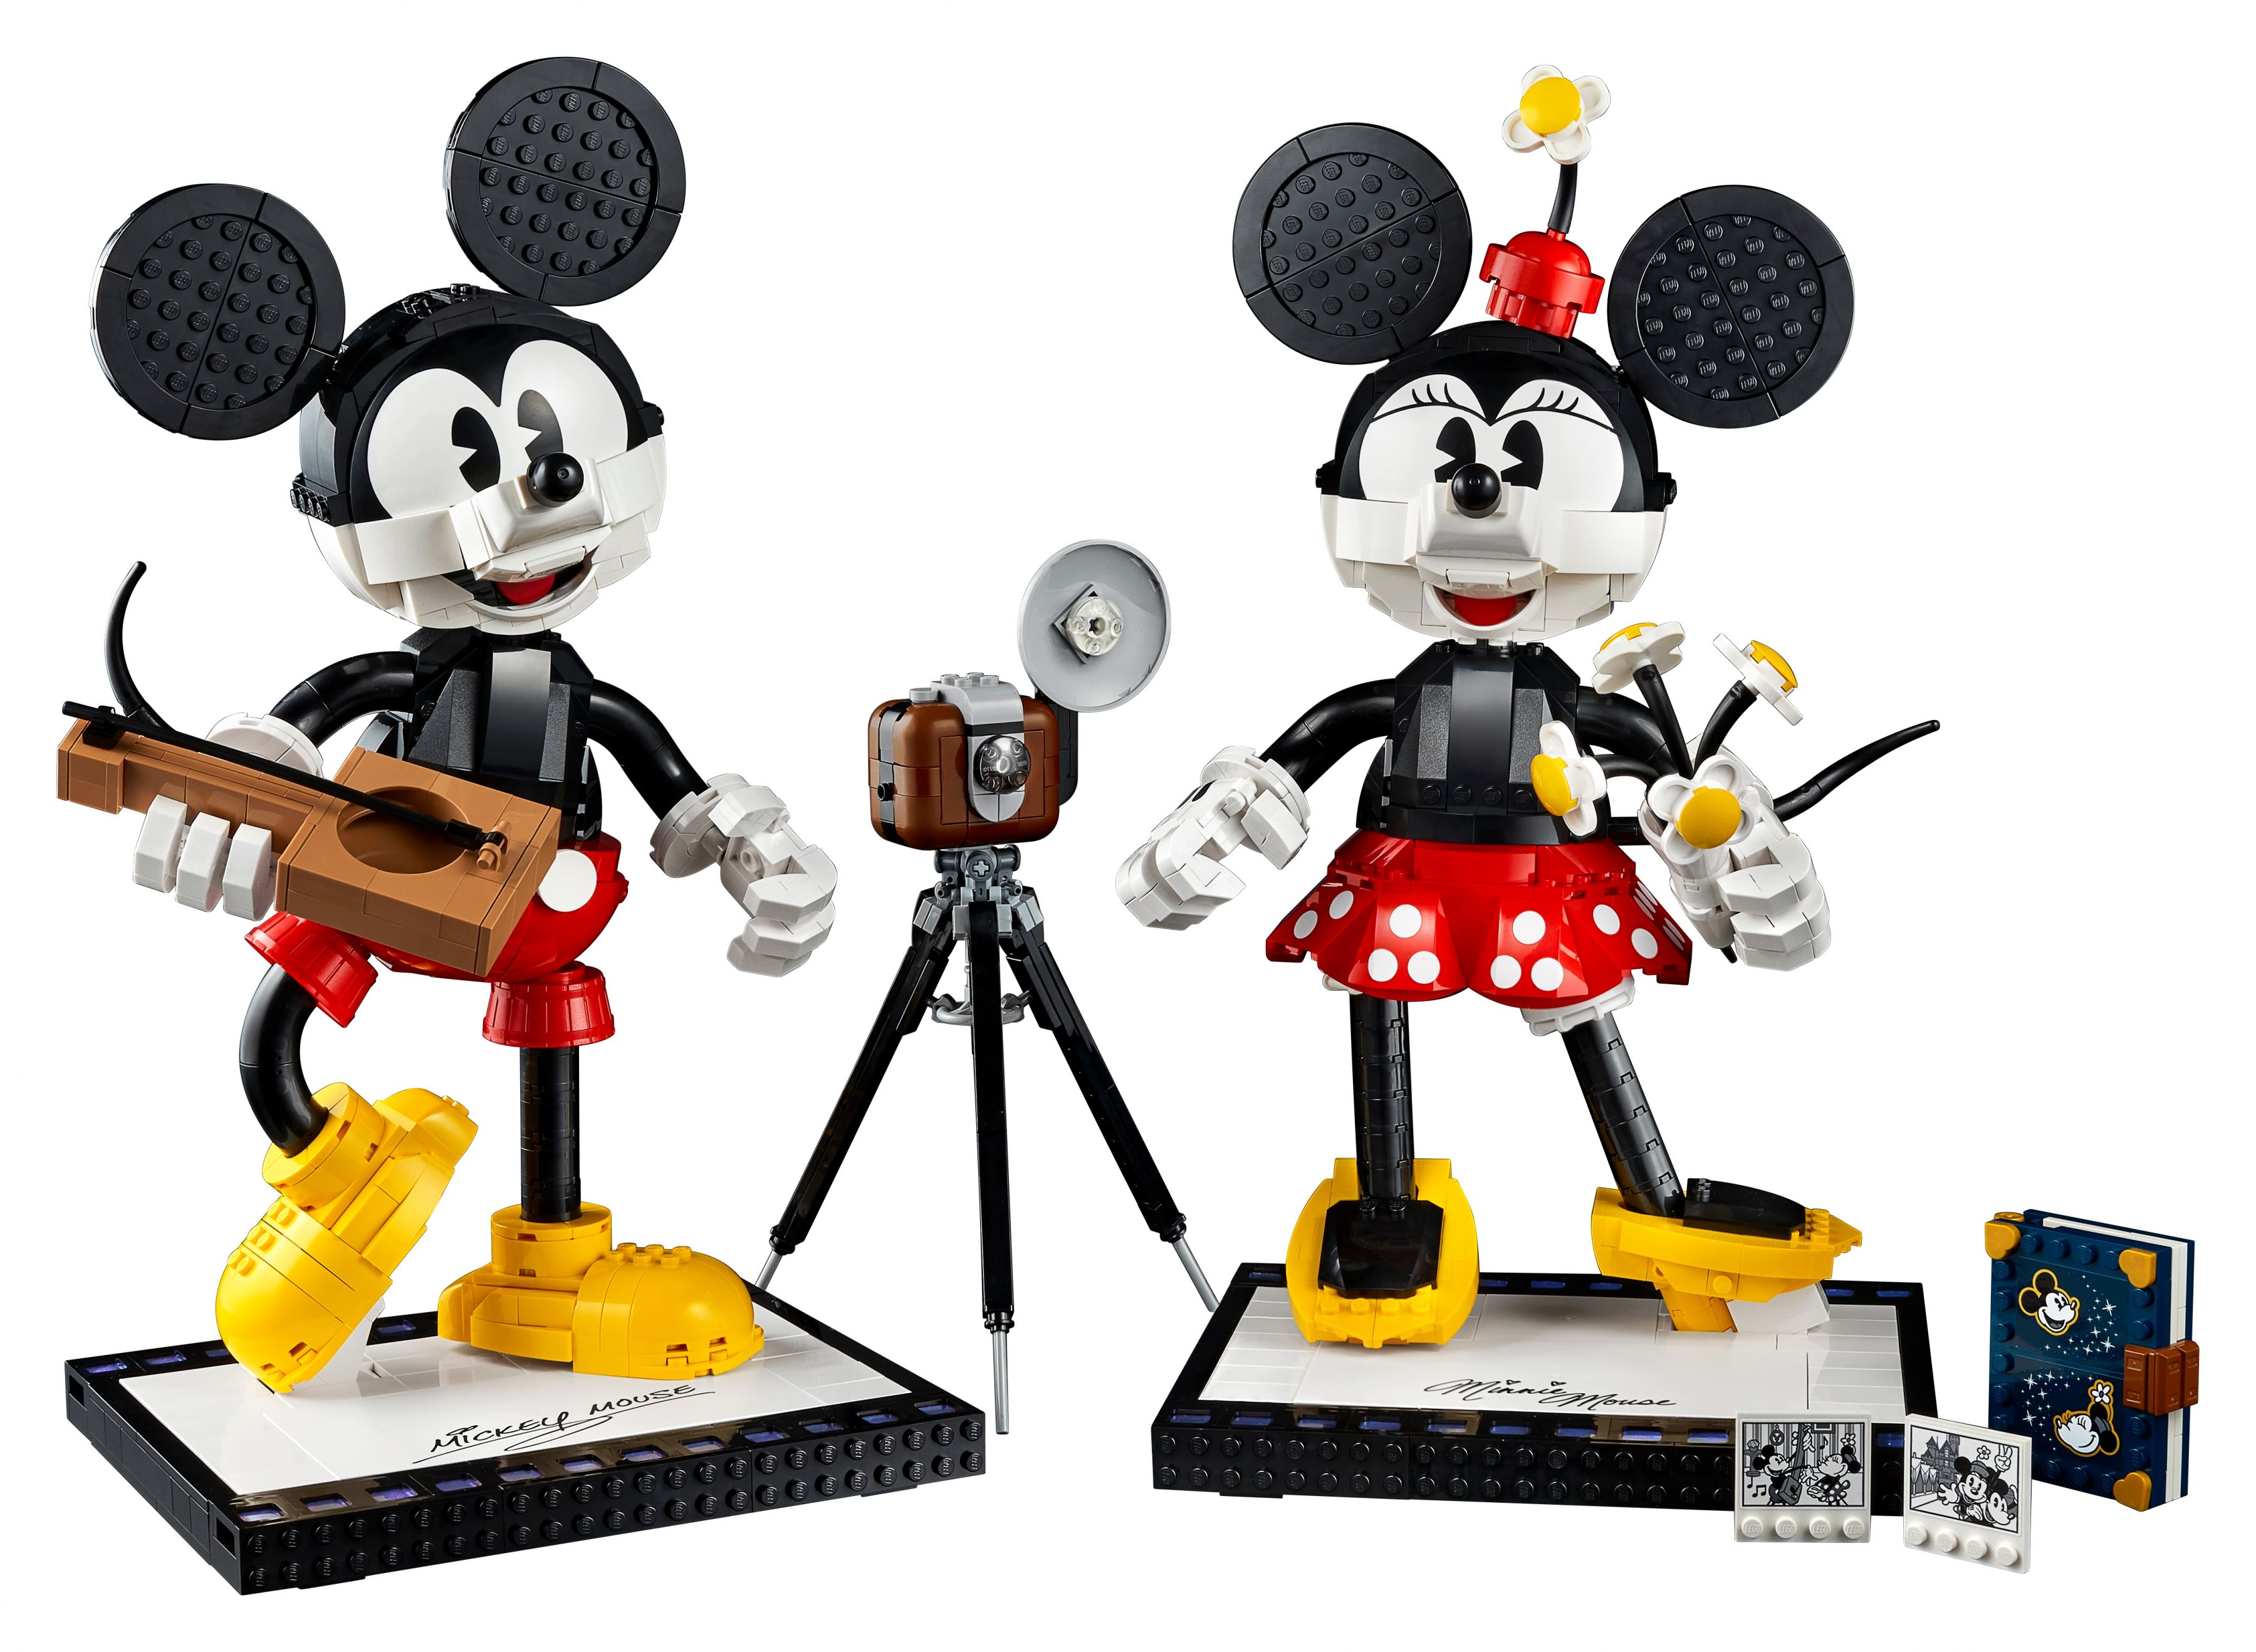 LEGO Disney 43179 Micky Maus und Minnie Maus LEGO_43179_alt3.jpg